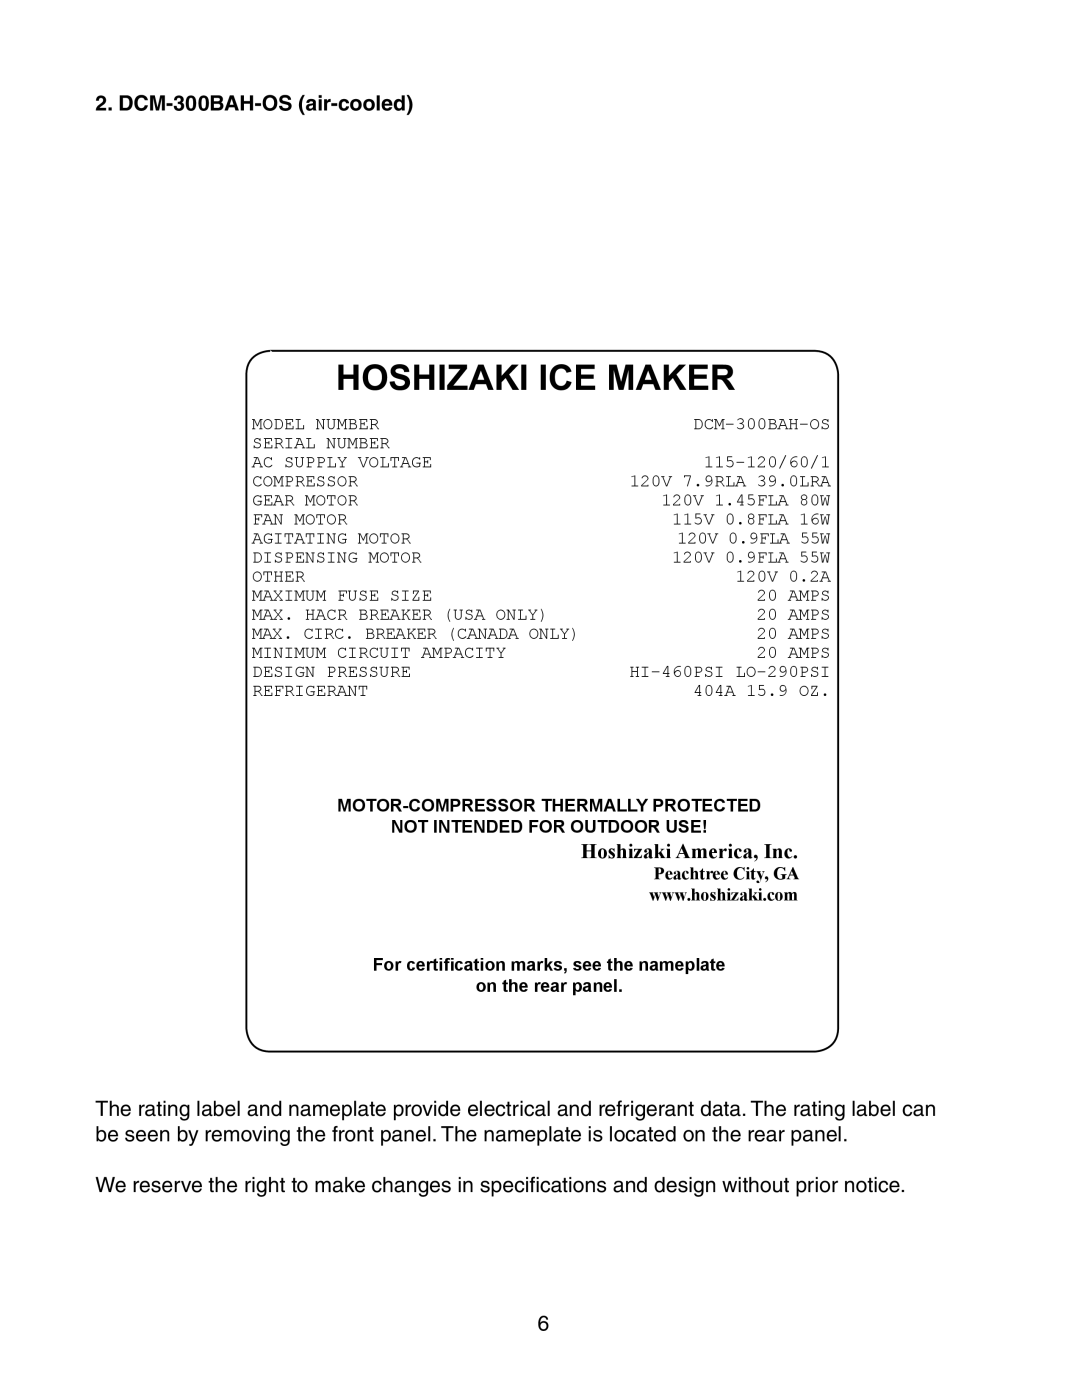 Hoshizaki DCM-300BAH(-OS) instruction manual DCM-300BAH-OS air-cooled, Hoshizaki Ice Maker, Hoshizaki America, Inc 